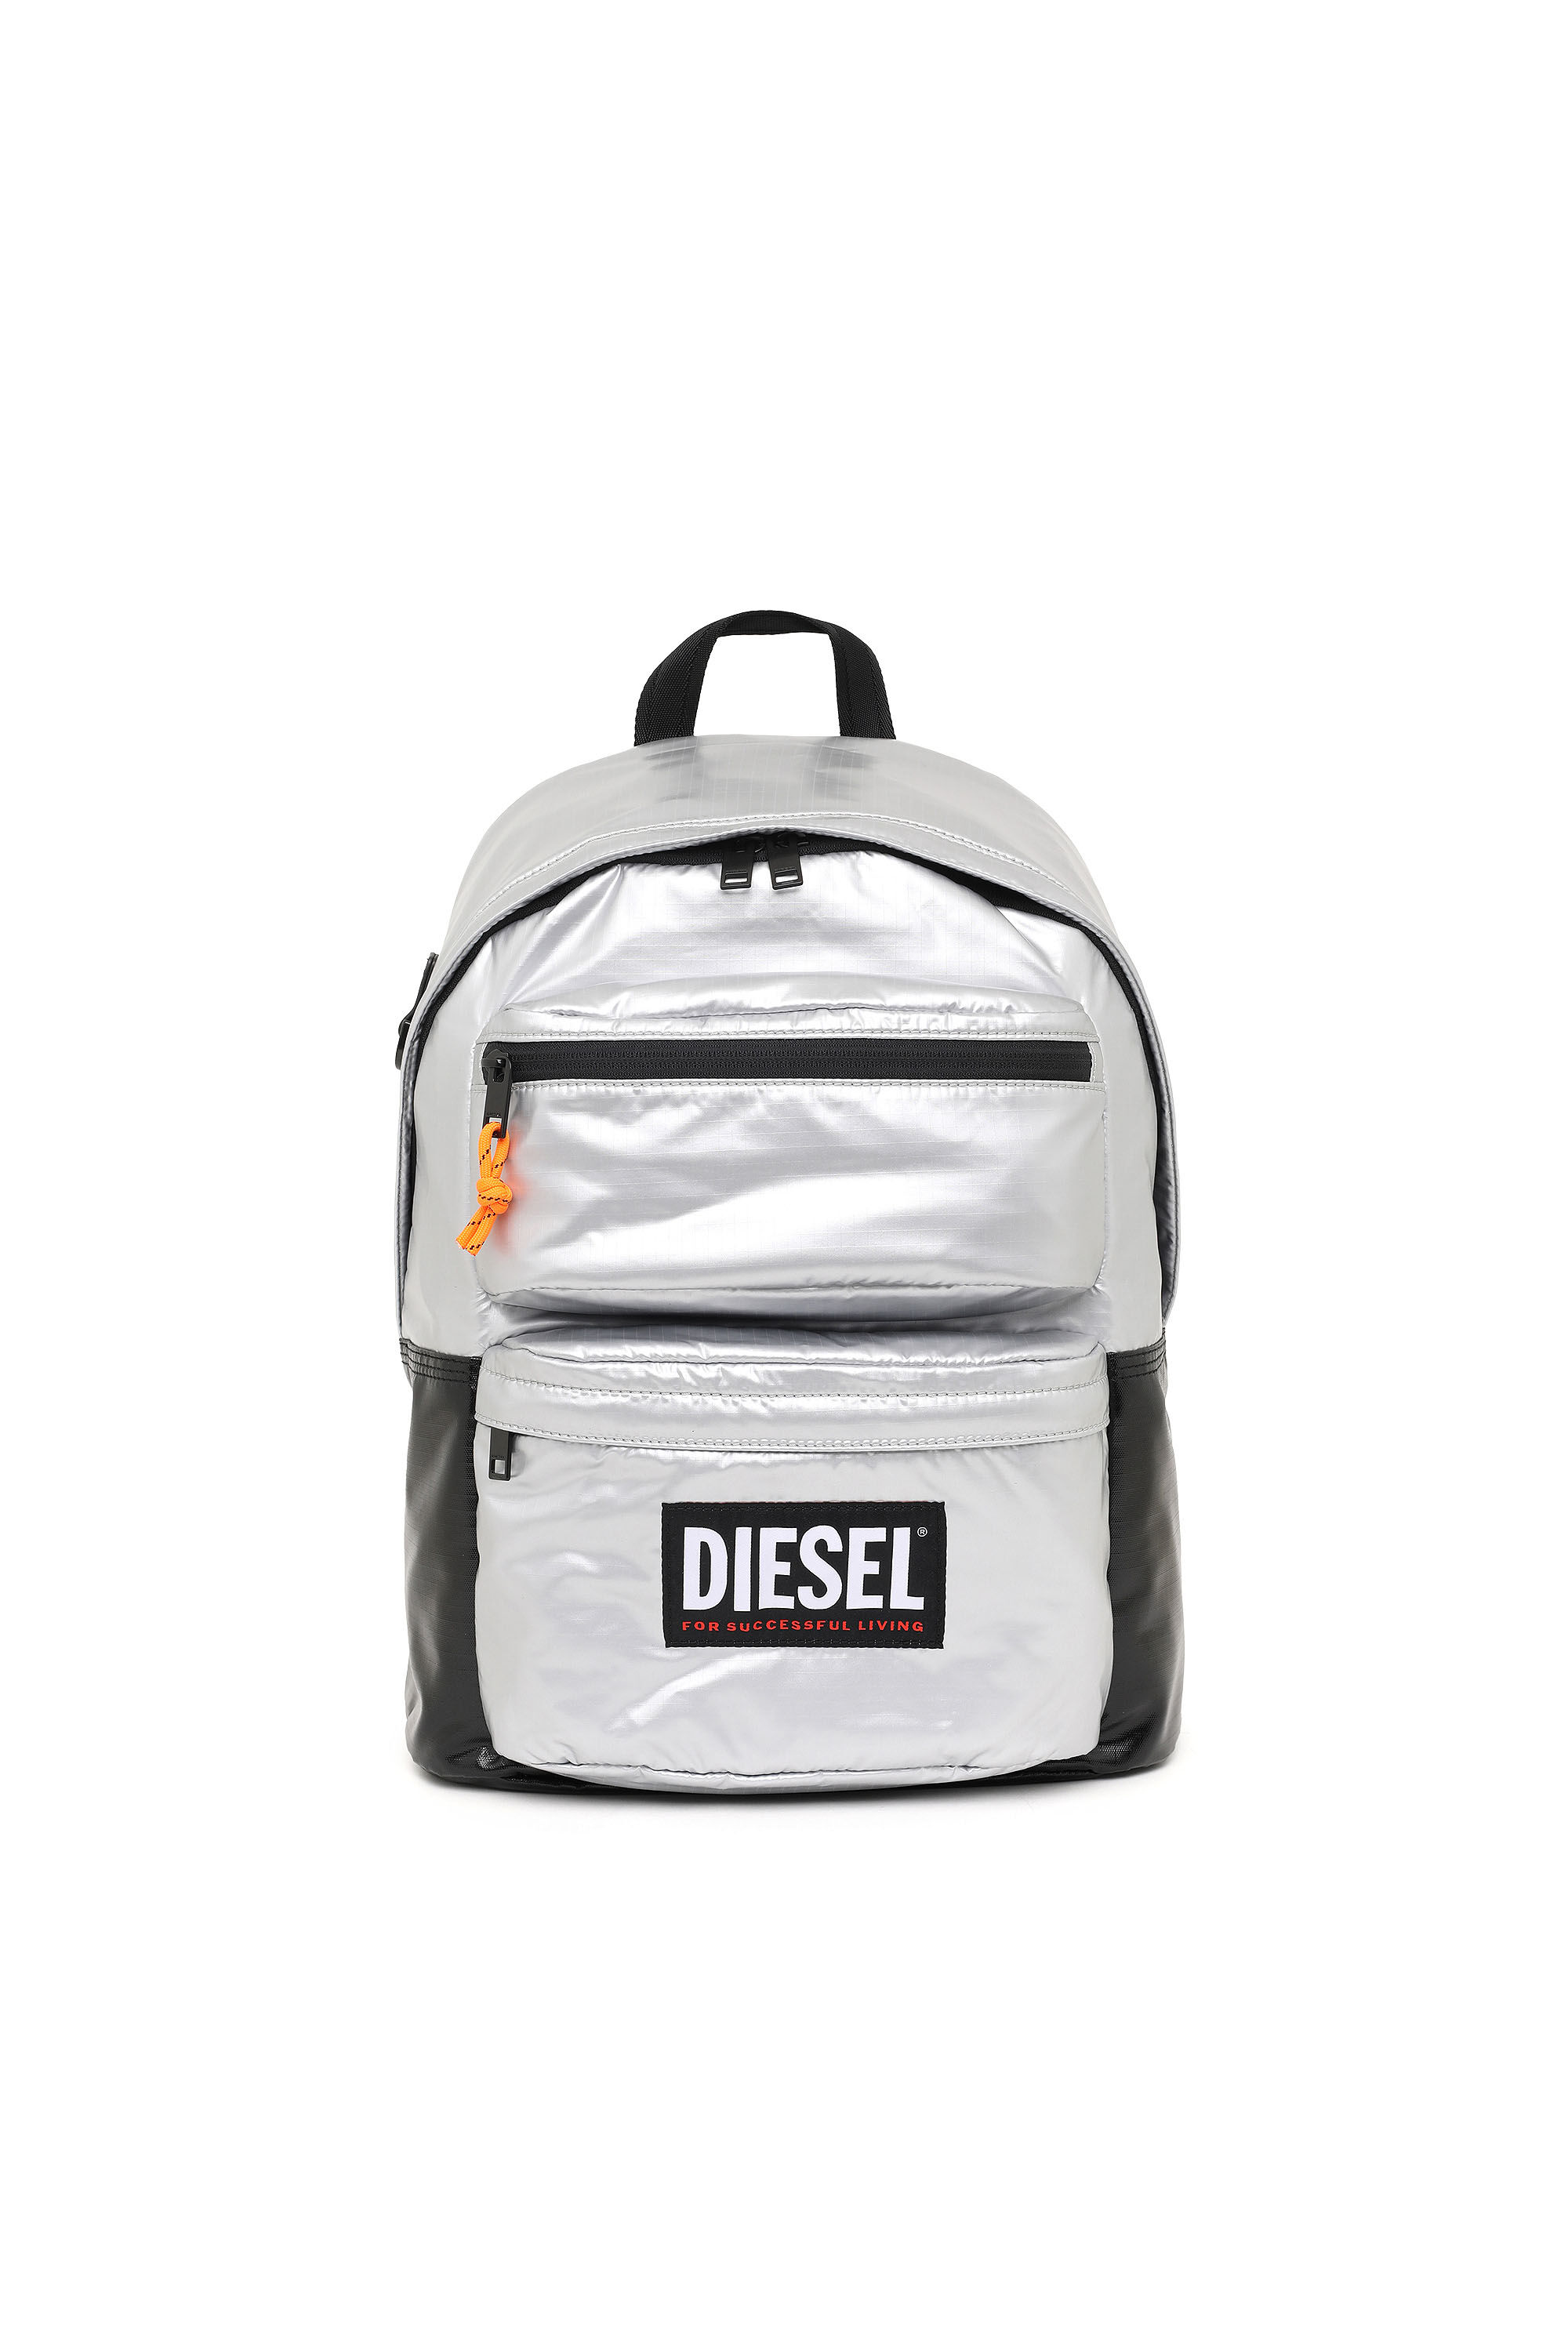 Diesel - RODYO PAT, Silver - Image 2